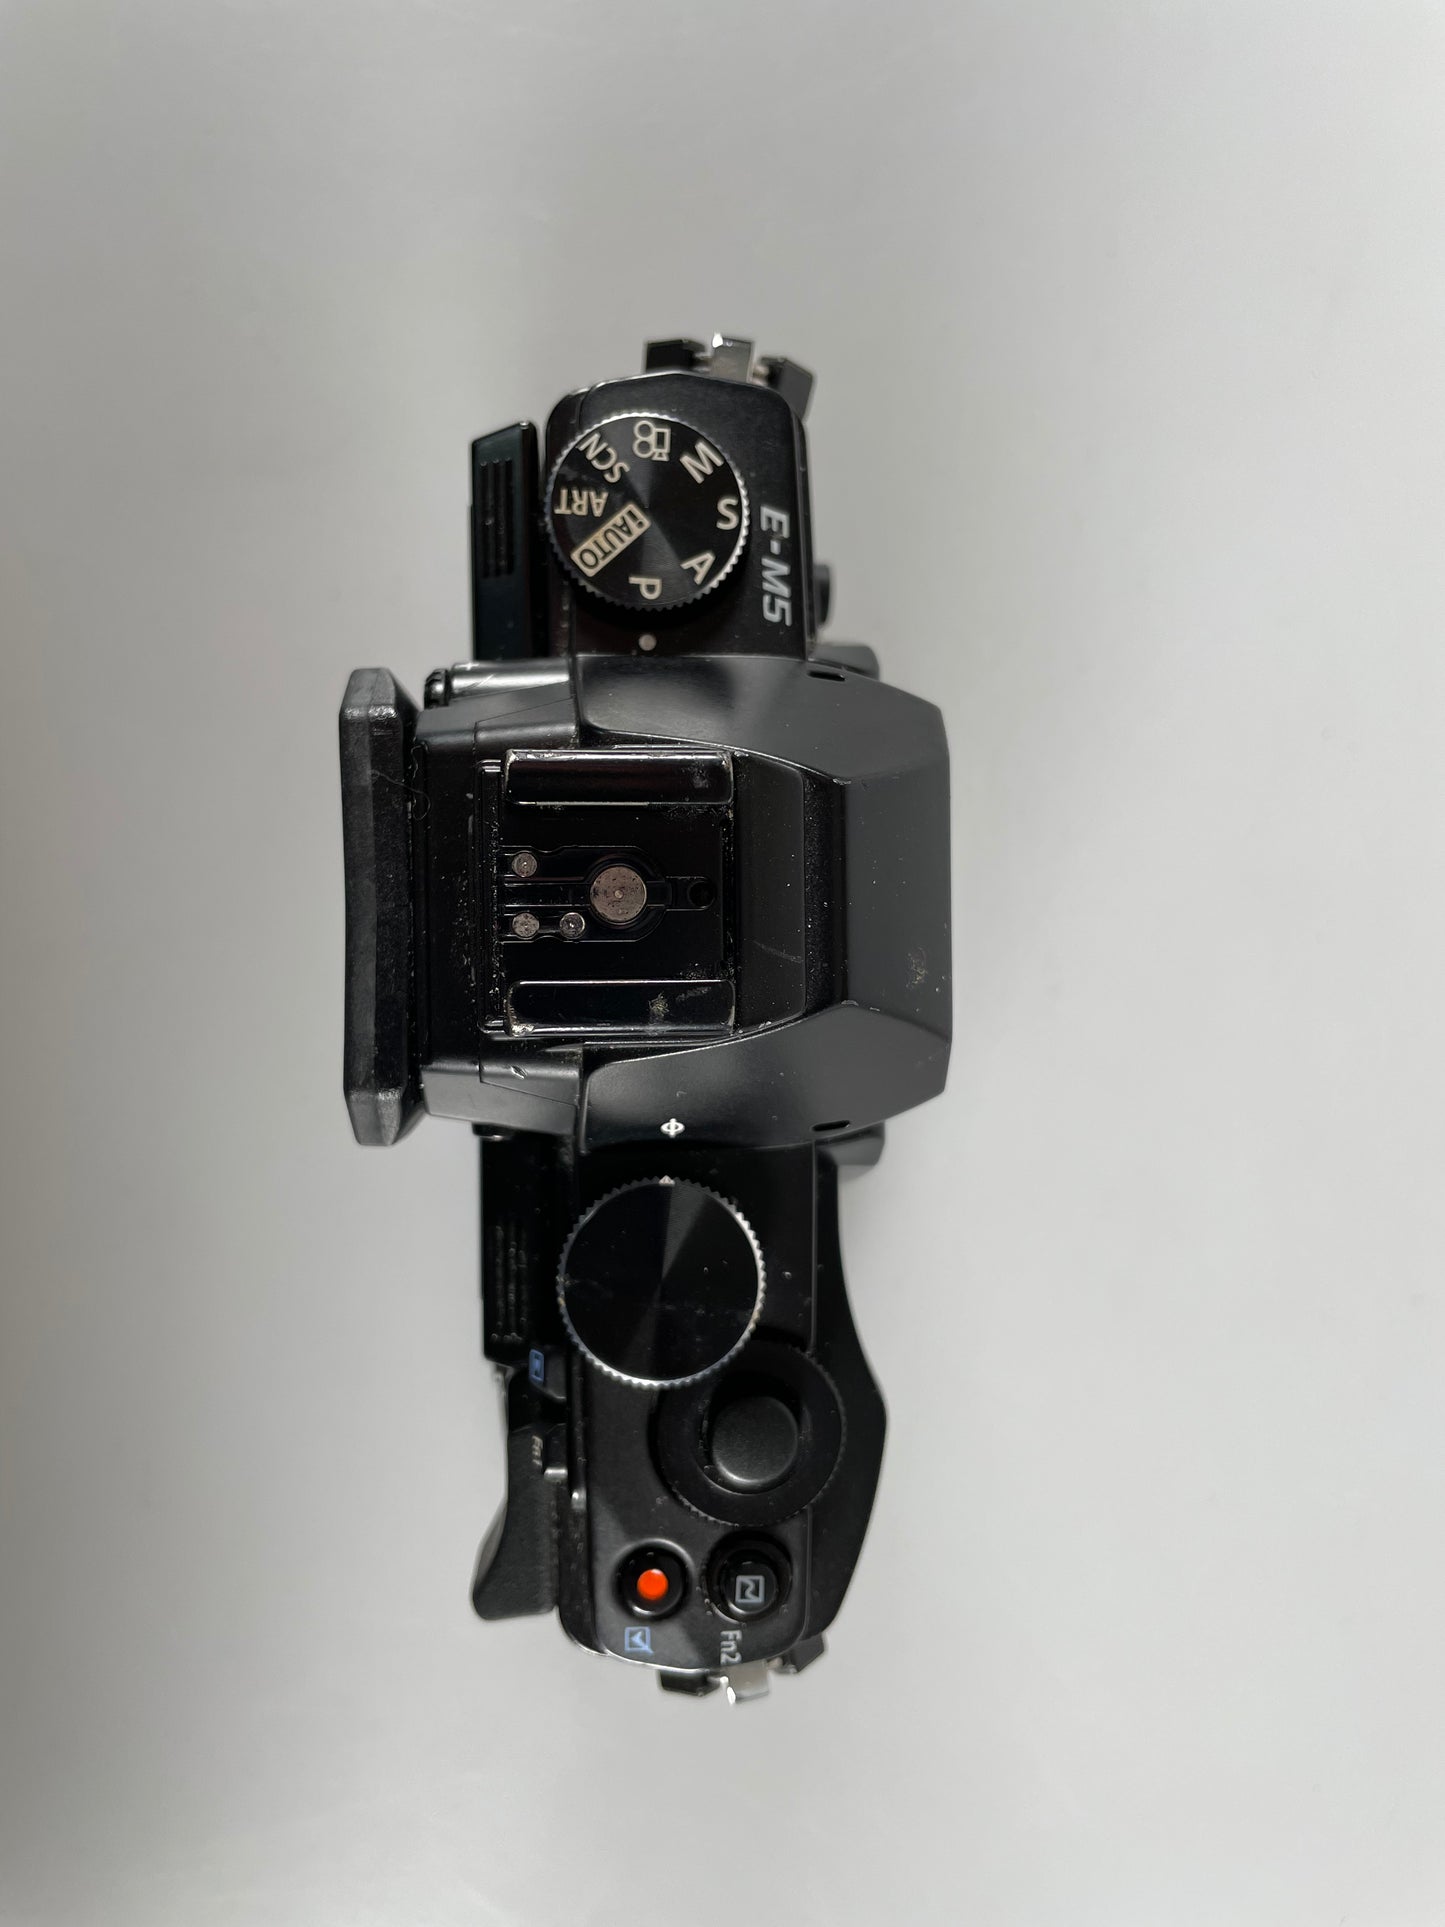 Olympus OM-D E-M5 16.1 MP Digital Camera Black (Body Only)